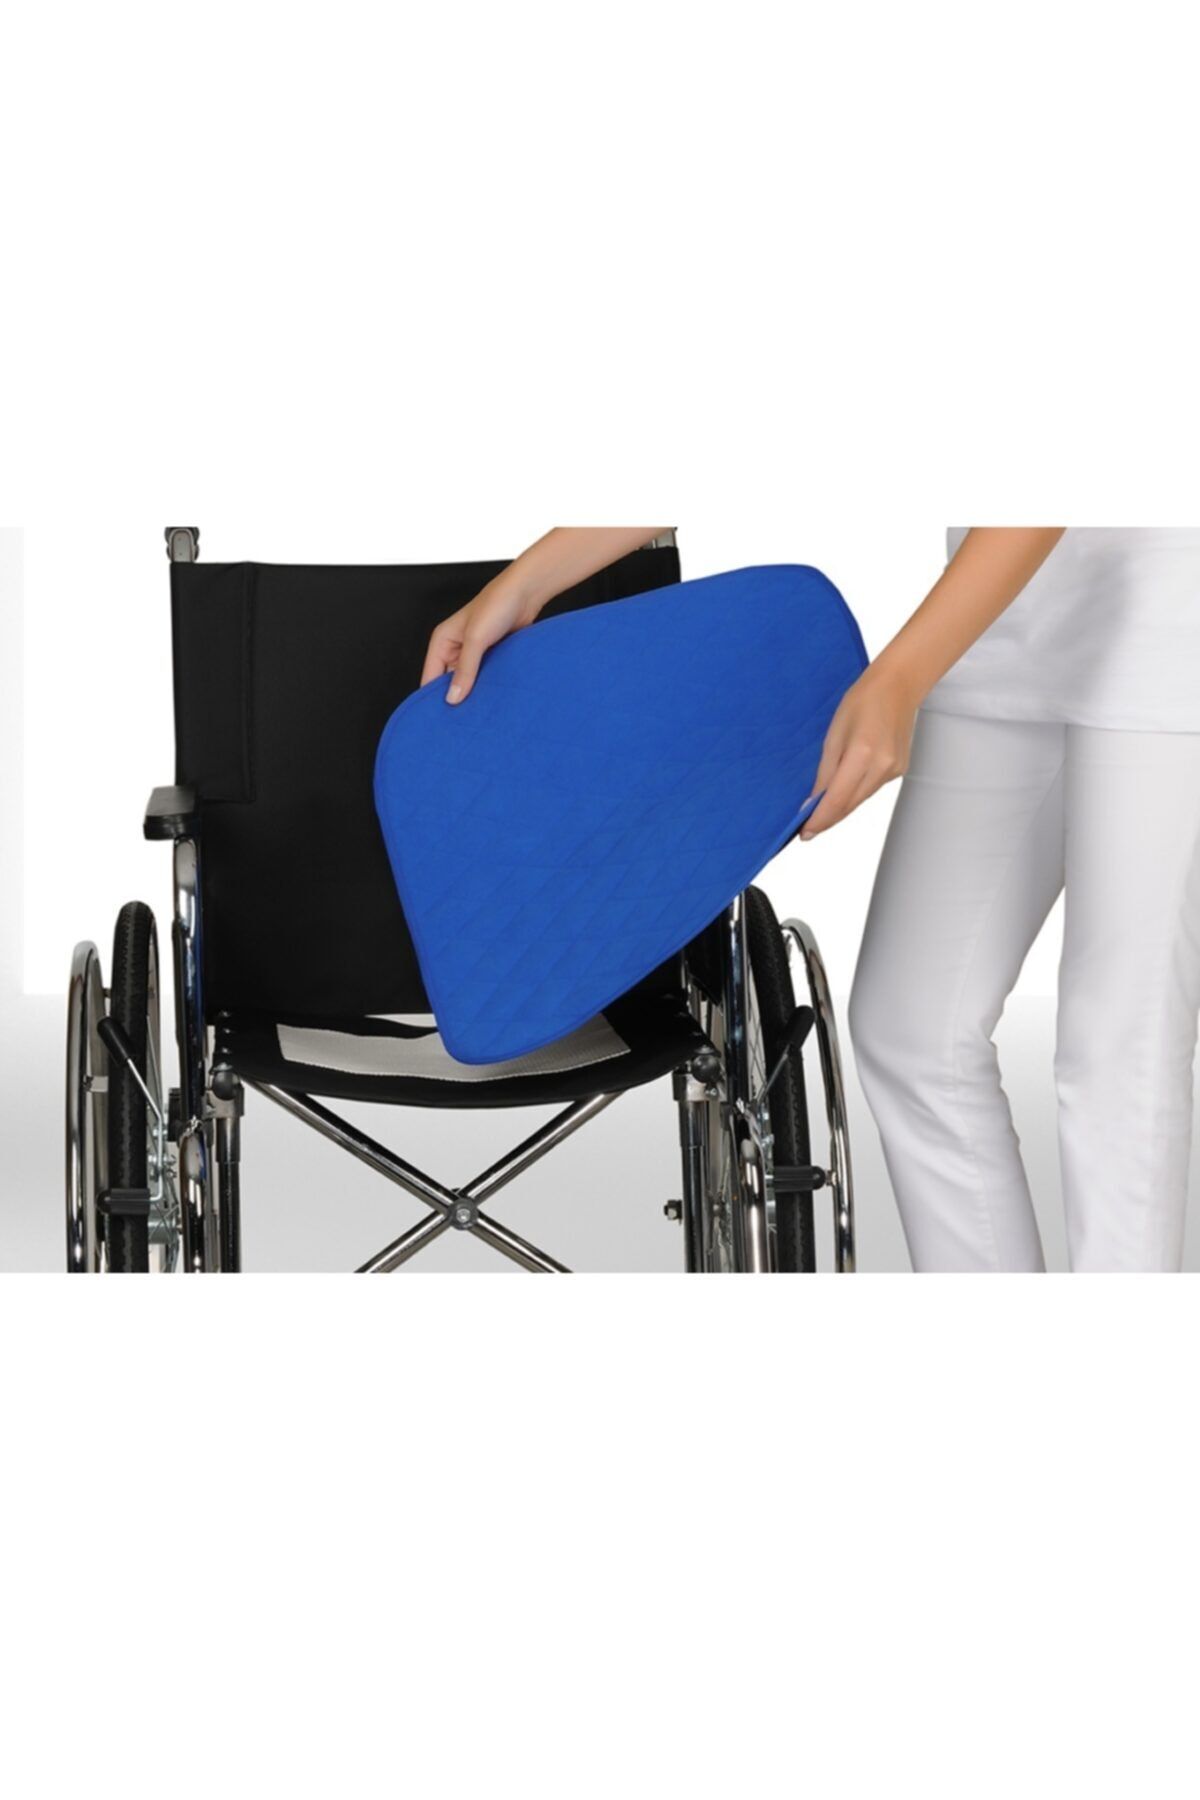 CARETEX Abso Yıkanabilir,emici,sıvı Geçirmez Tekerlekli Sandalye Pedi Mavi 050x060